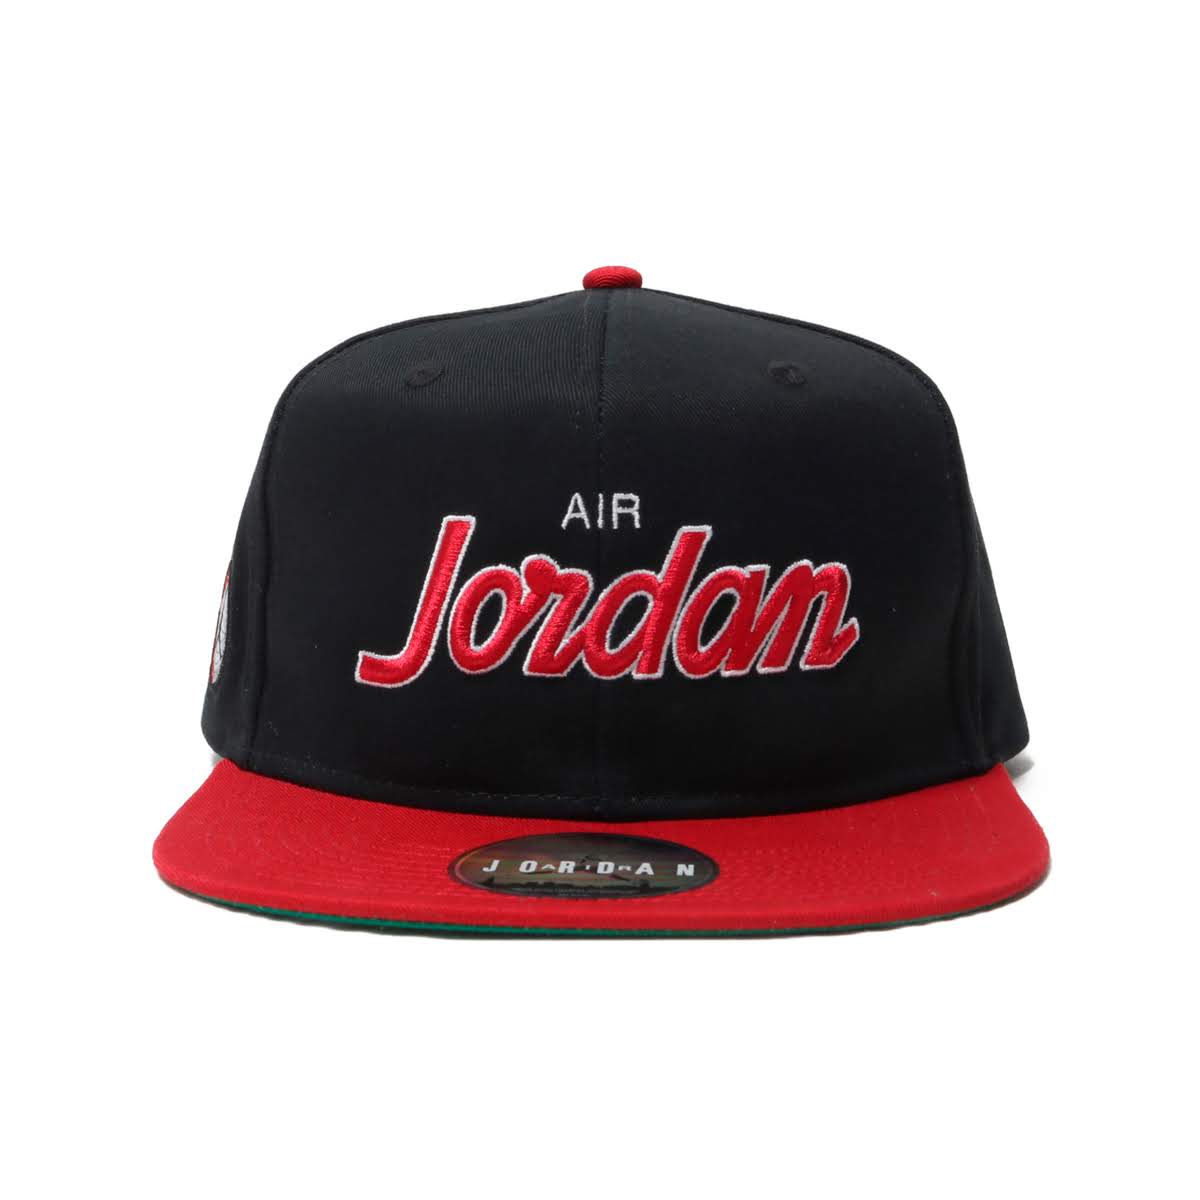 Air Jordan Pro Script Snapback Cap 